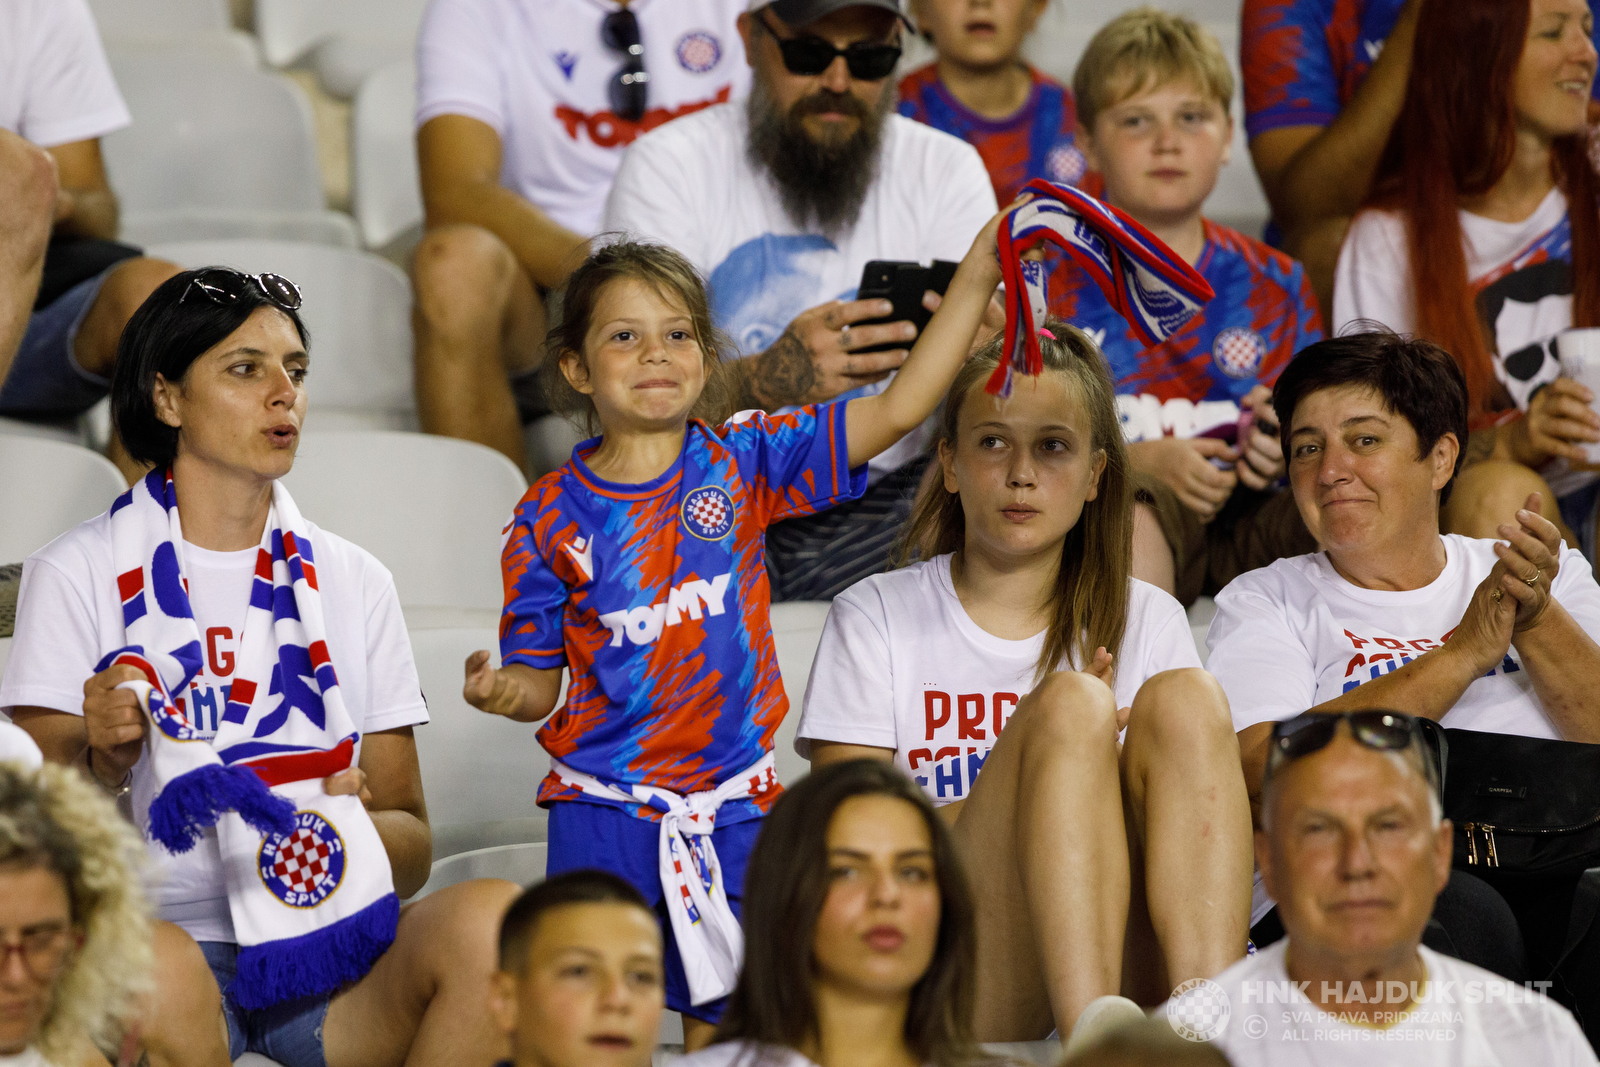 Pukštas nakon pobjede: Lako je igrati kad imaš ovakvu momčad iza sebe • HNK  Hajduk Split